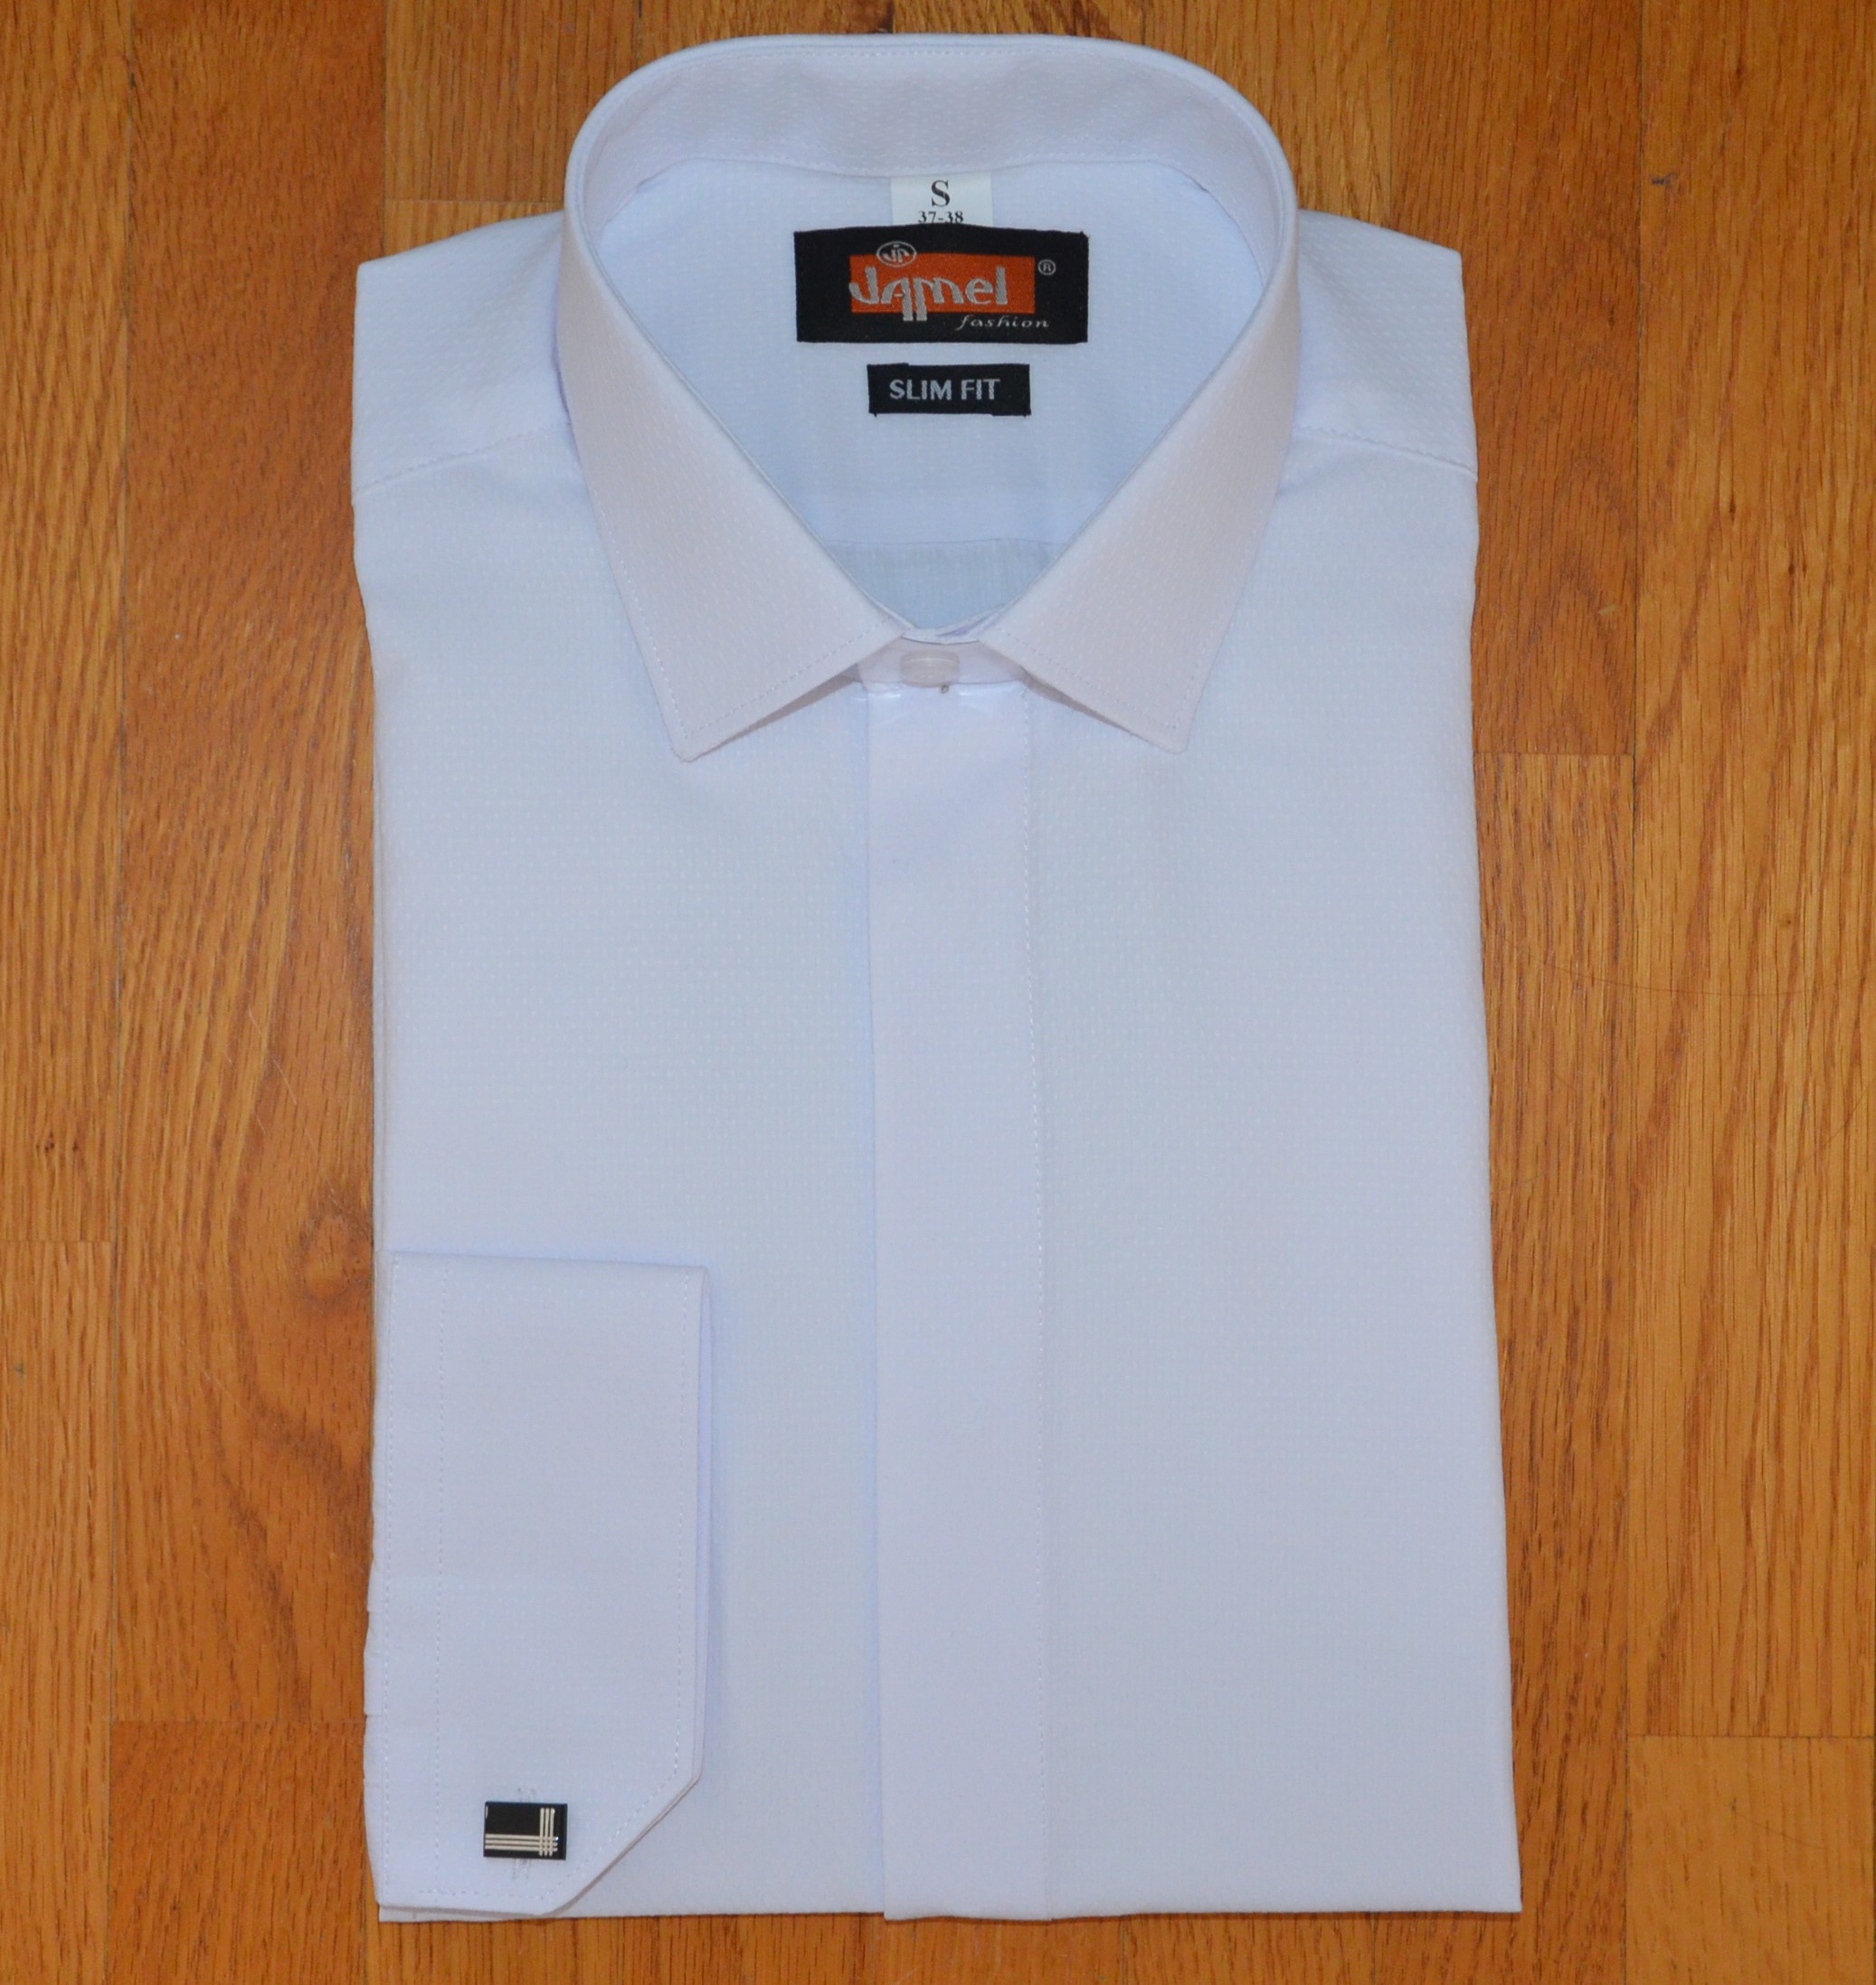 Pánská košile dlouhý rukáv Jamel Fashion 202/01 SLIM FIT Bílá manžetový knoflík zakrytá léga jemný vzor Velikost: 45-46 XXL